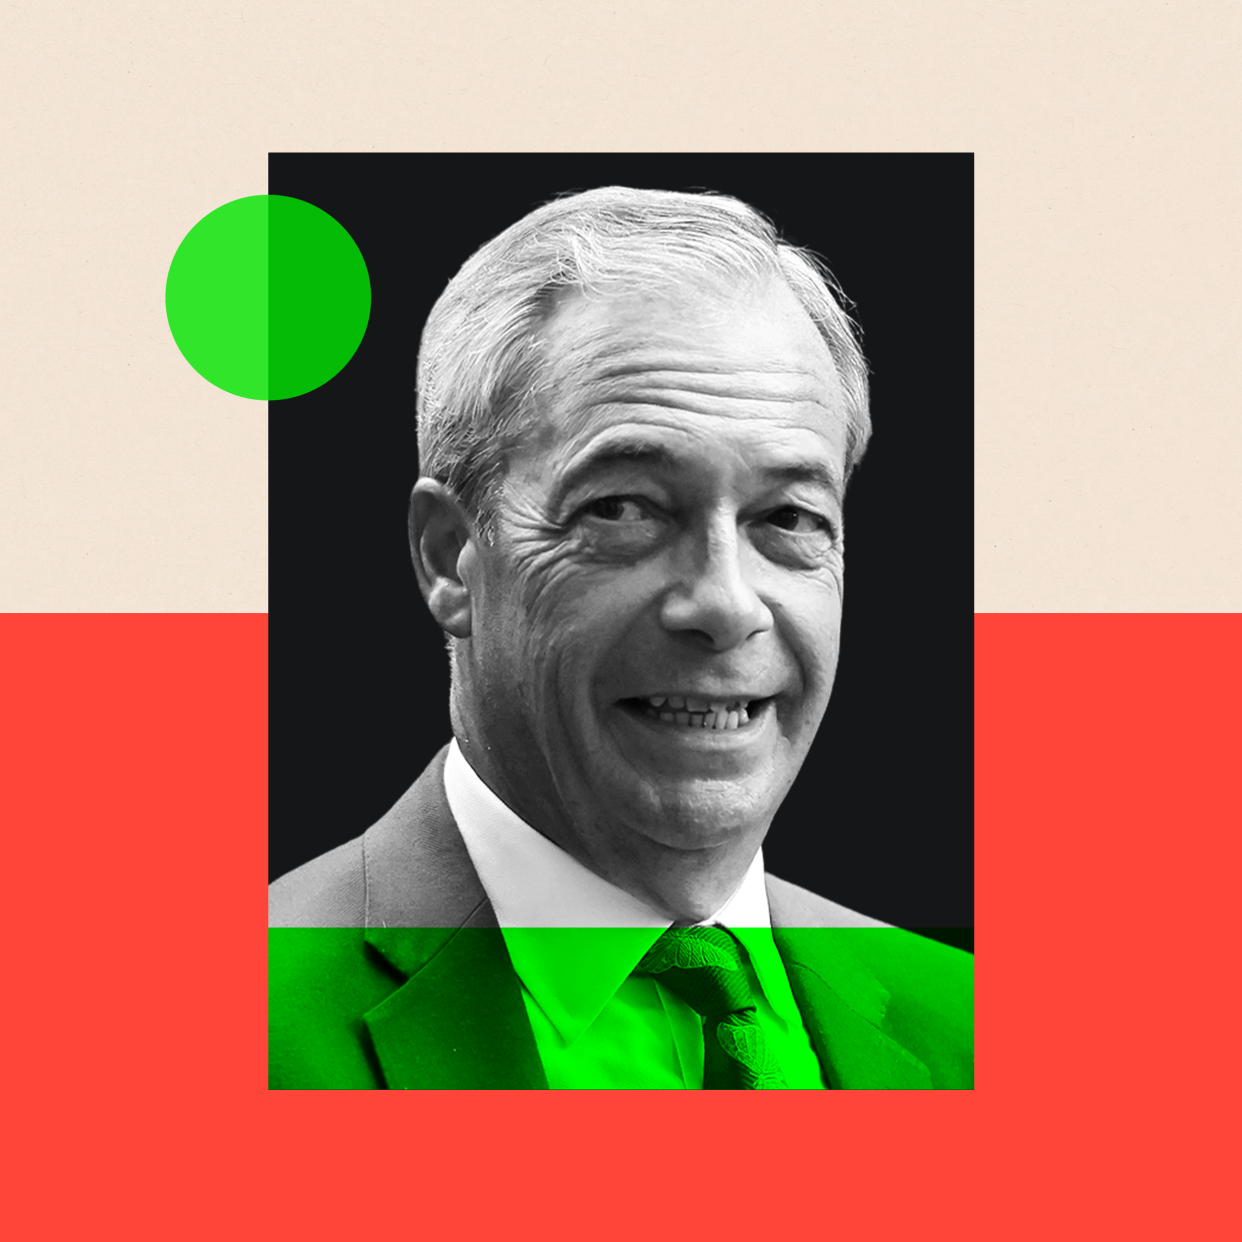 Graphic showing Reform UK leader Nigel Farage